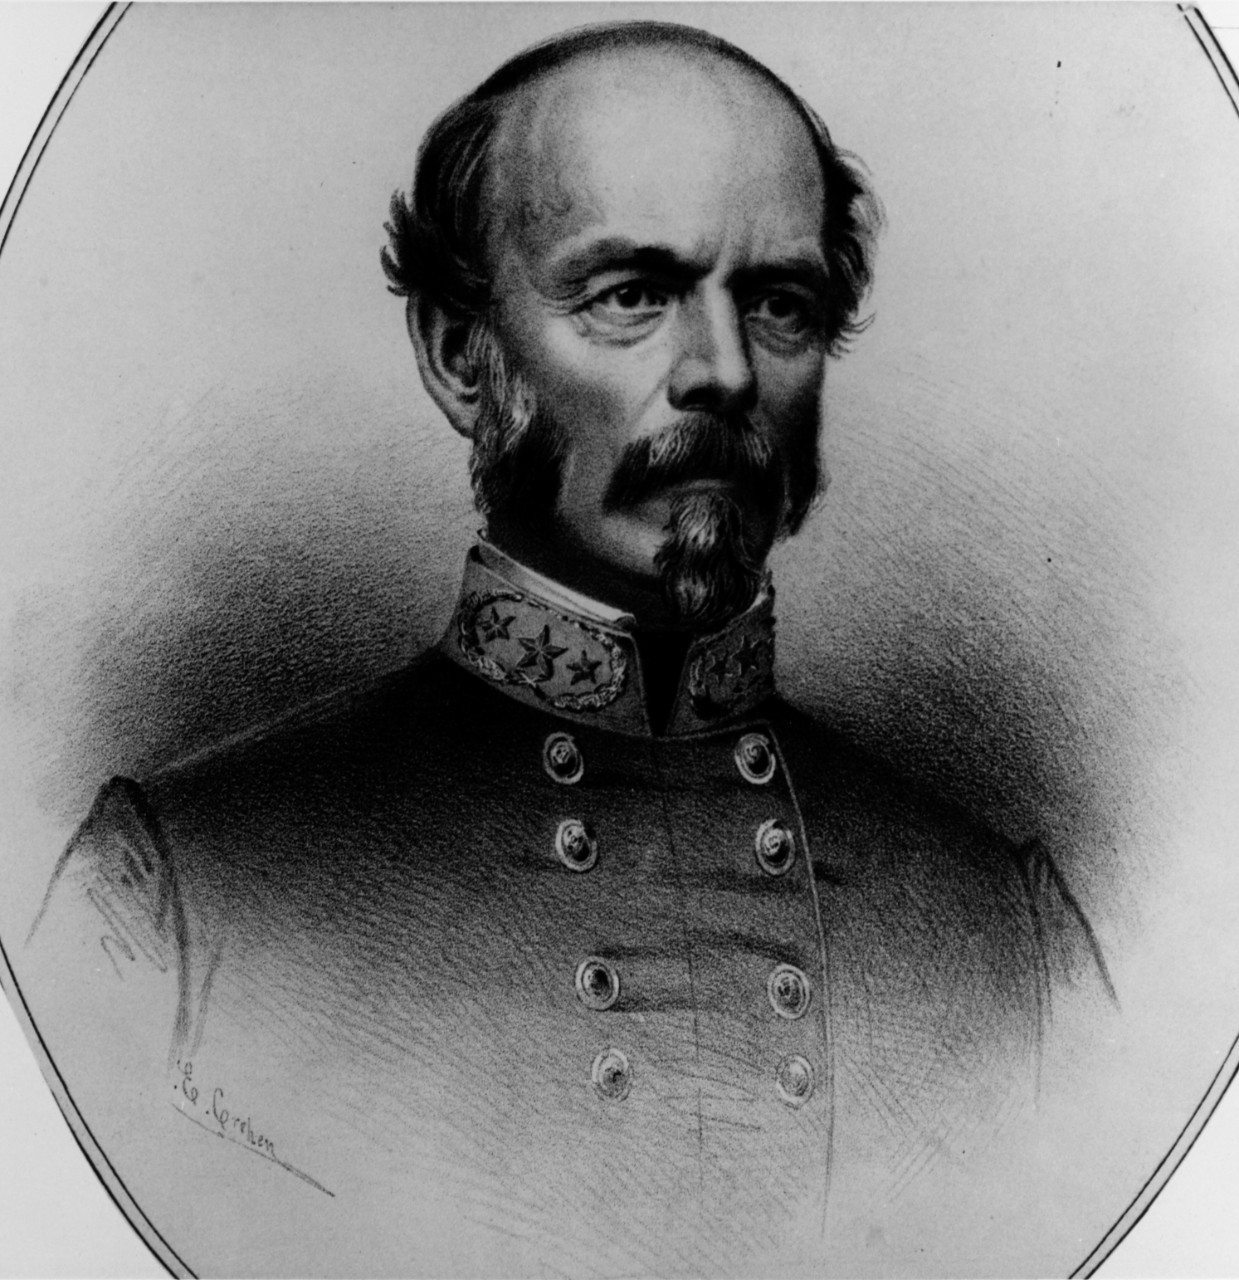 Lieutenant General Joseph E. Johnston, CSA